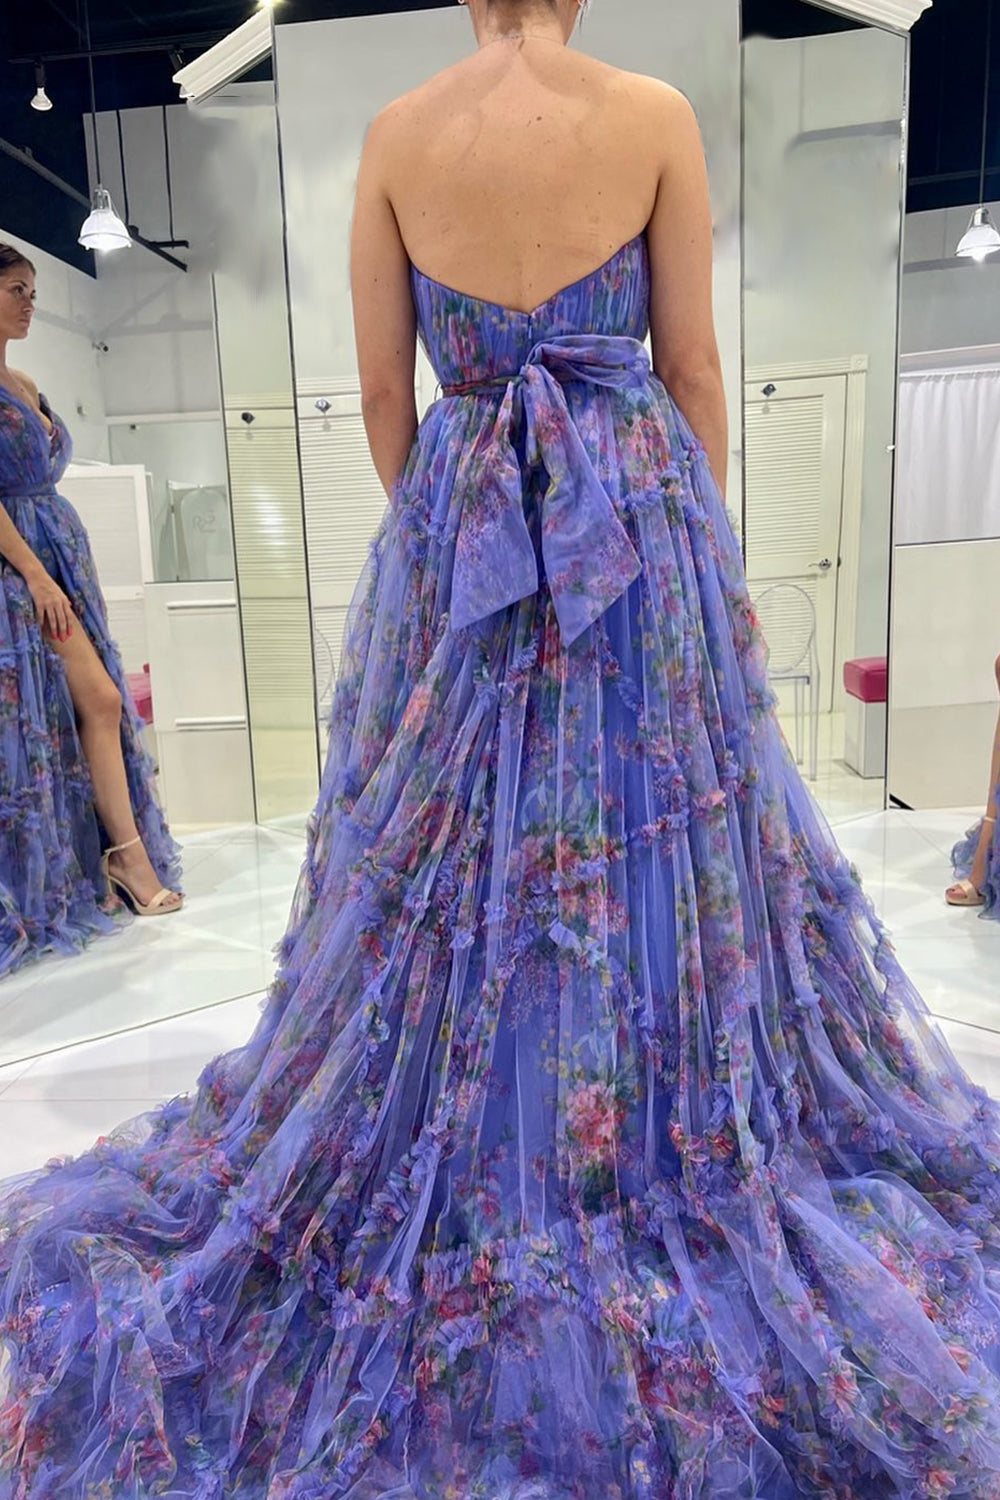 Honey Dew Floral Dress - Printed Cotton Mini Dress – Marche